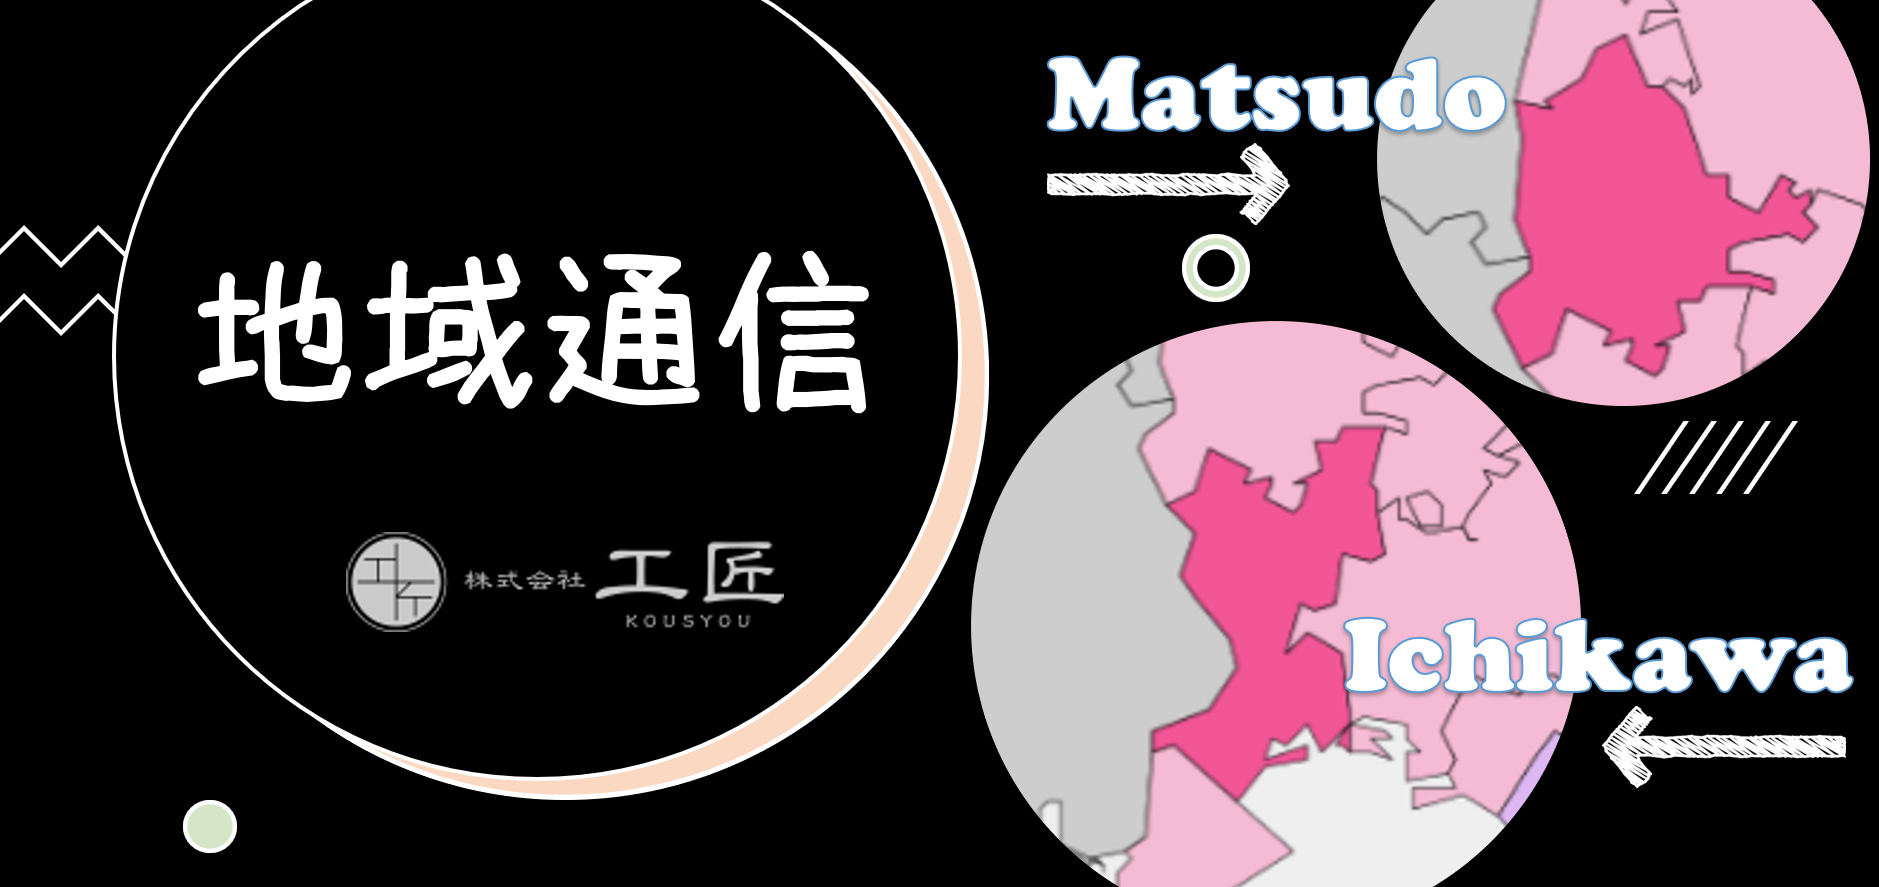 【地域通信#003】松戸市_市内で巡る桜の名所・さくらまつり